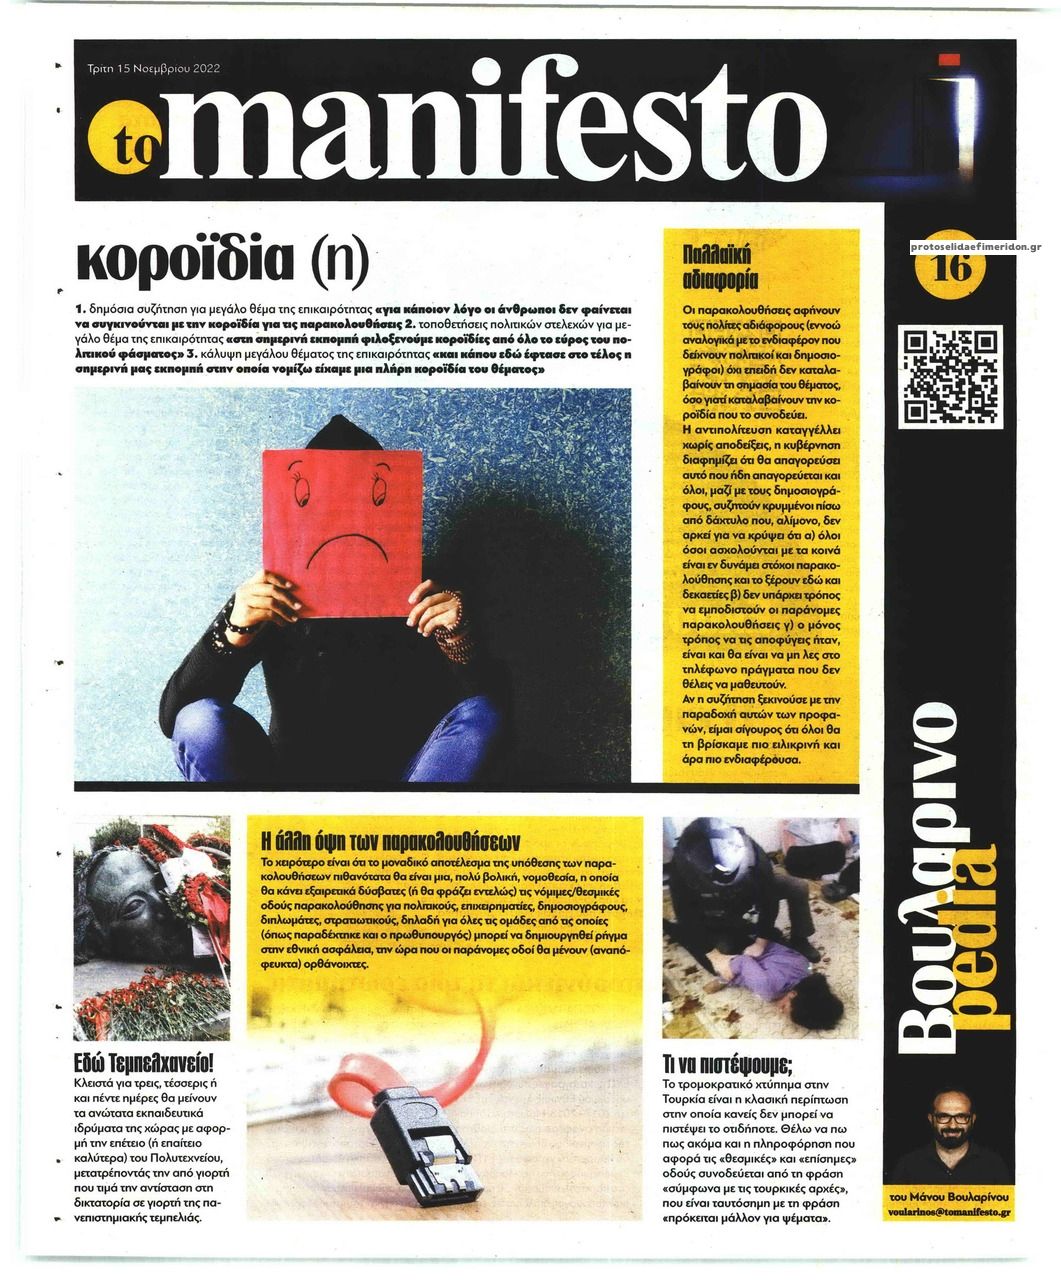 Οπισθόφυλλο εφημερίδας Το Manifesto